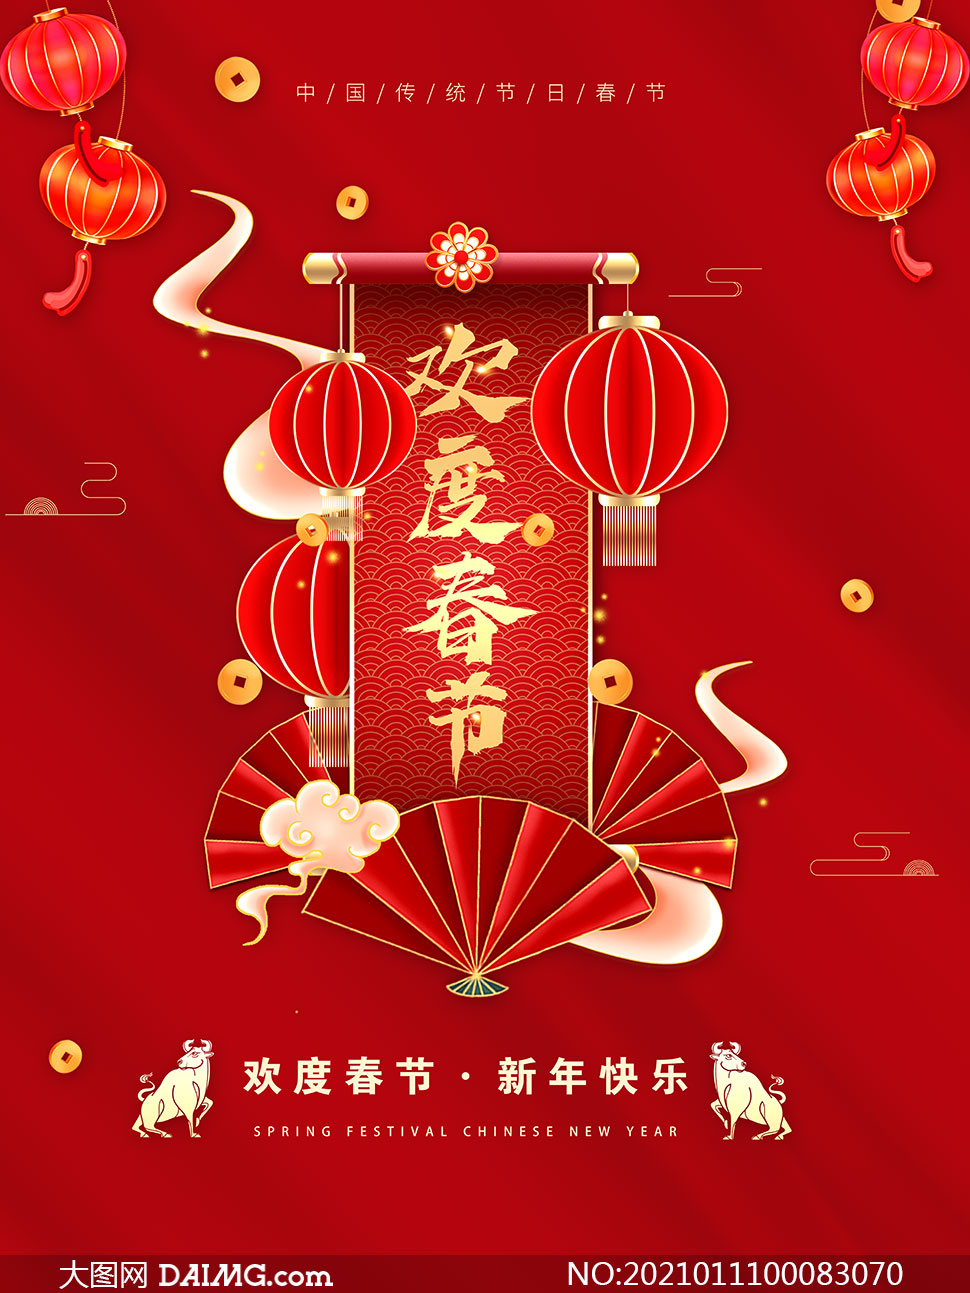 大吉喜庆海报设计psd模板         2021新年快乐喜庆海报模板psd素材